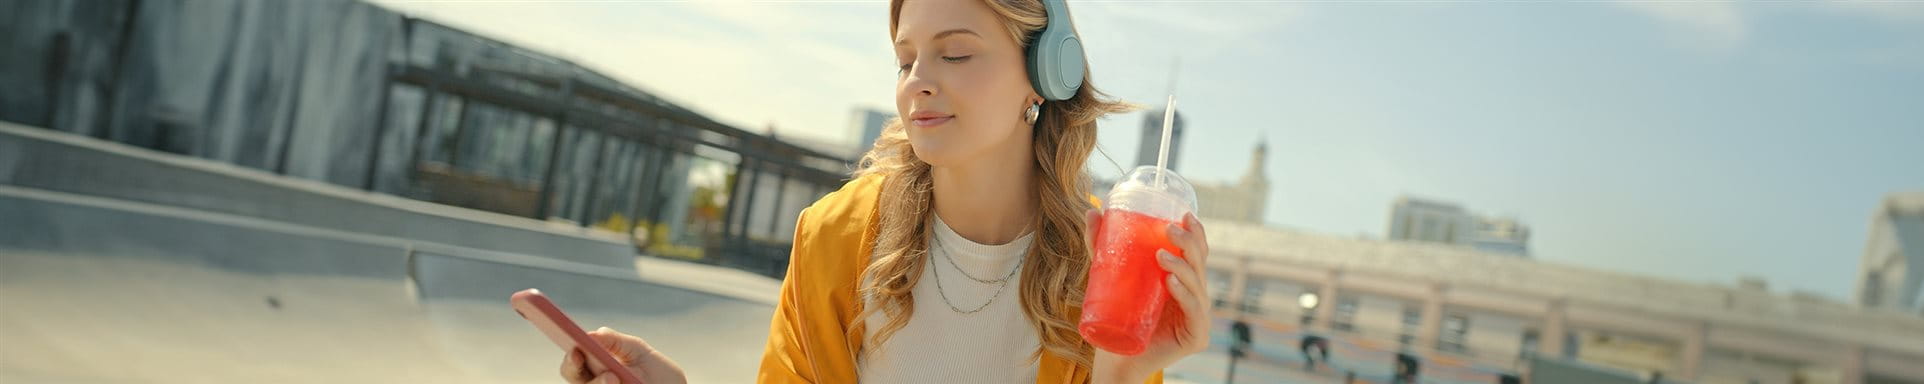 Une jeune fille écoute de la musique avec des écouteurs et tient un icetea.